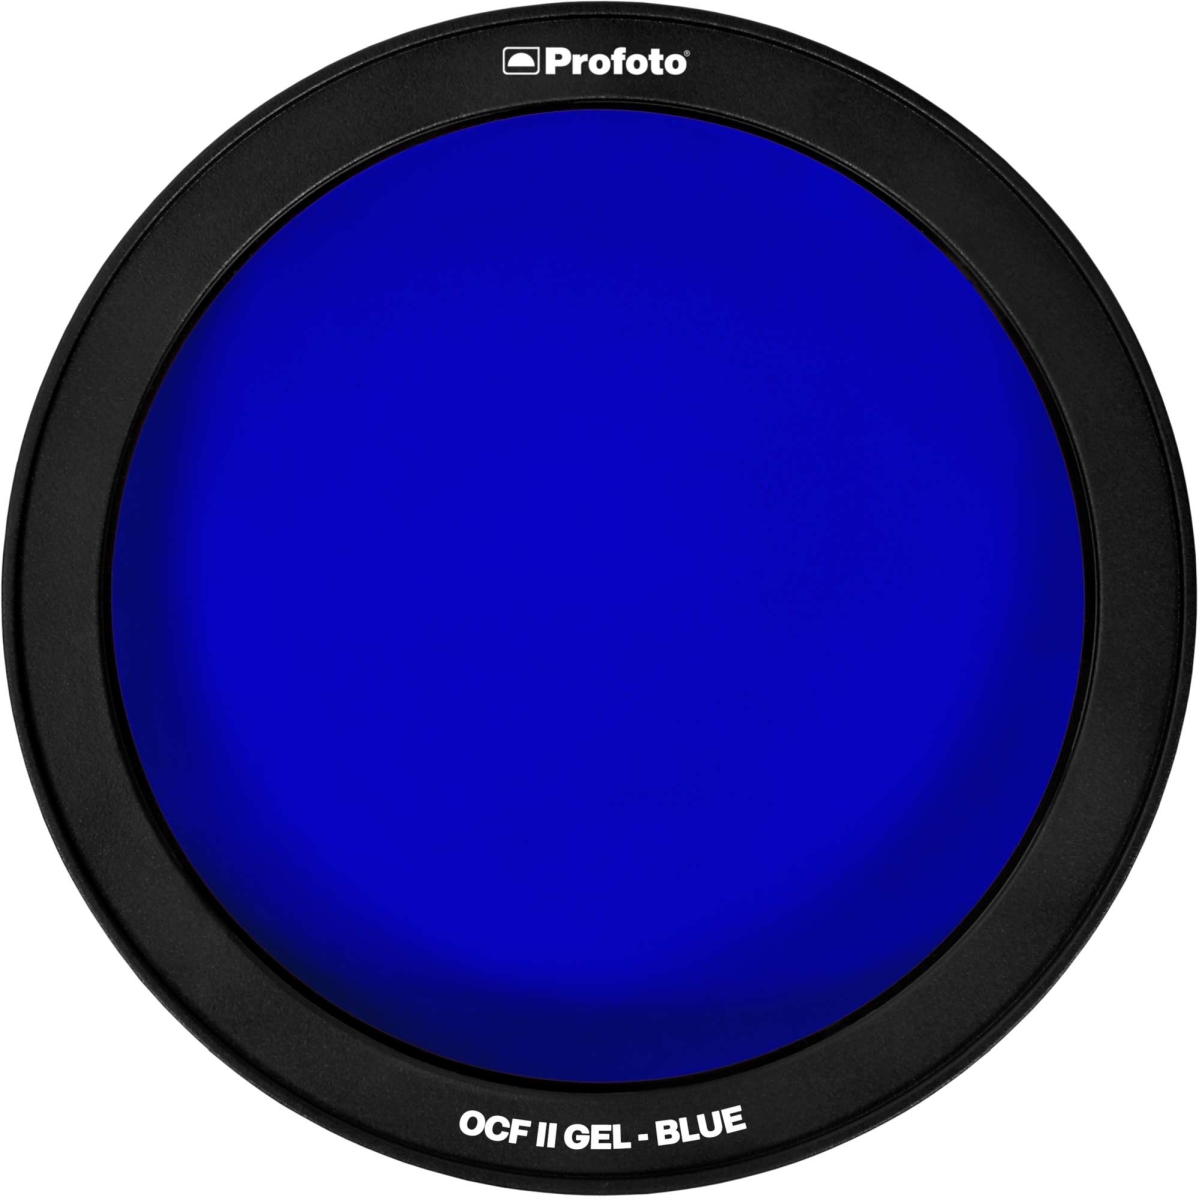 Profoto OCF II Gel Blue 